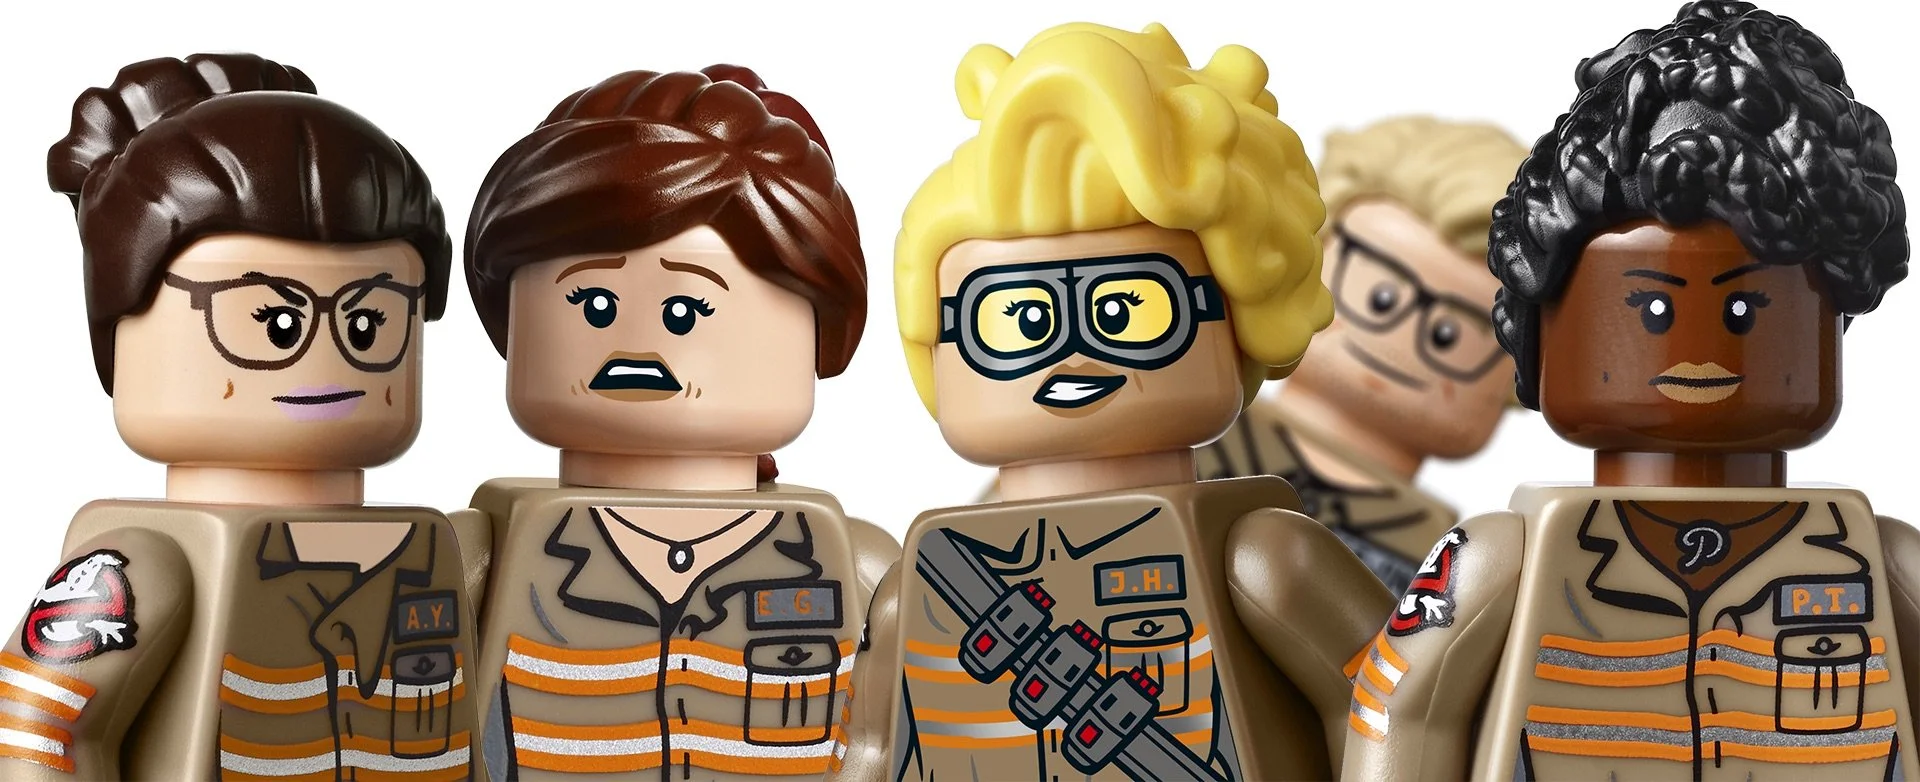 Lego по новым Ghostbusters ущемляет в правах Криса Хемсворта - фото 1